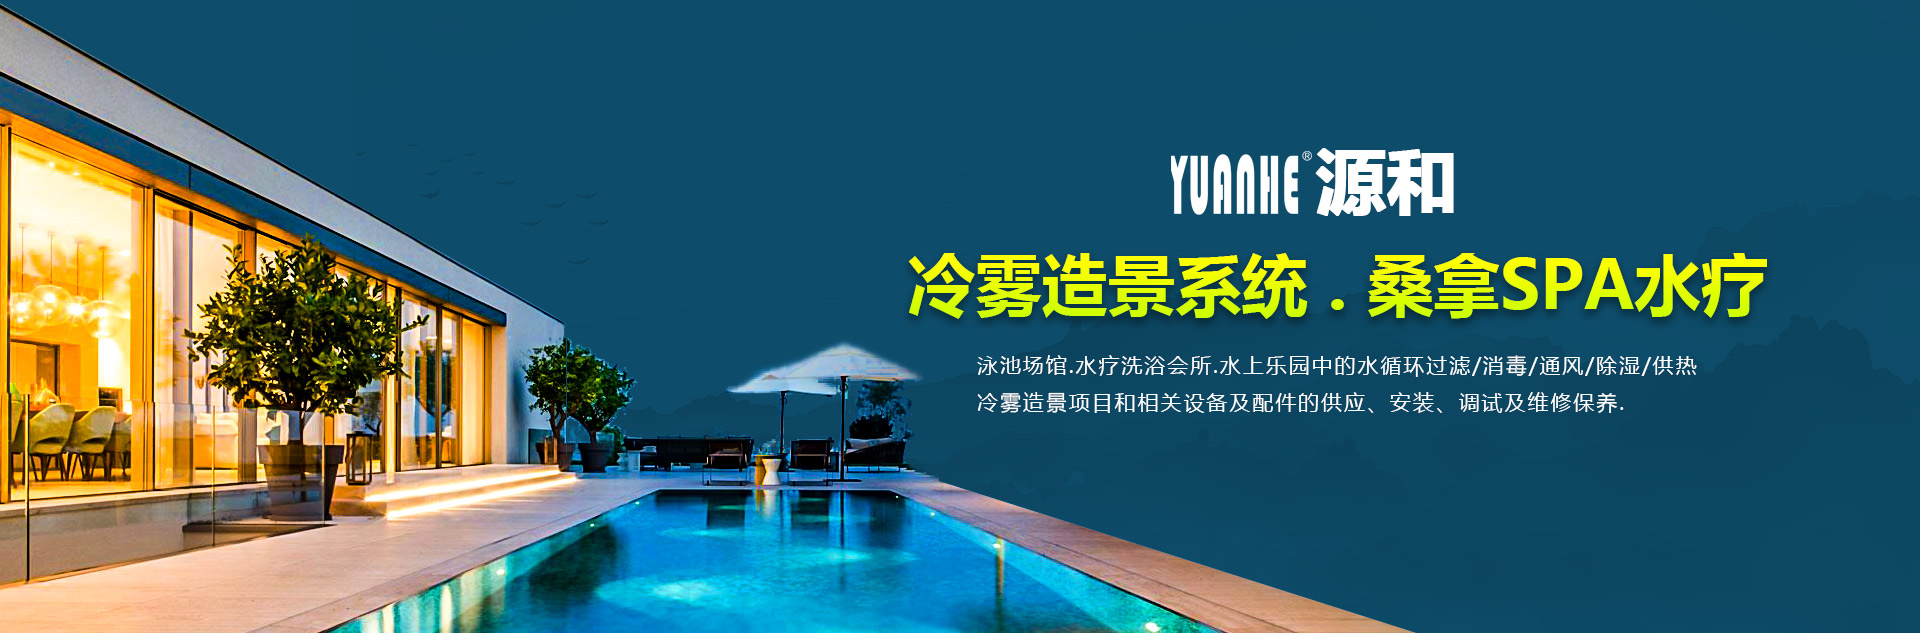 重庆泳池设备厂家-源和公司